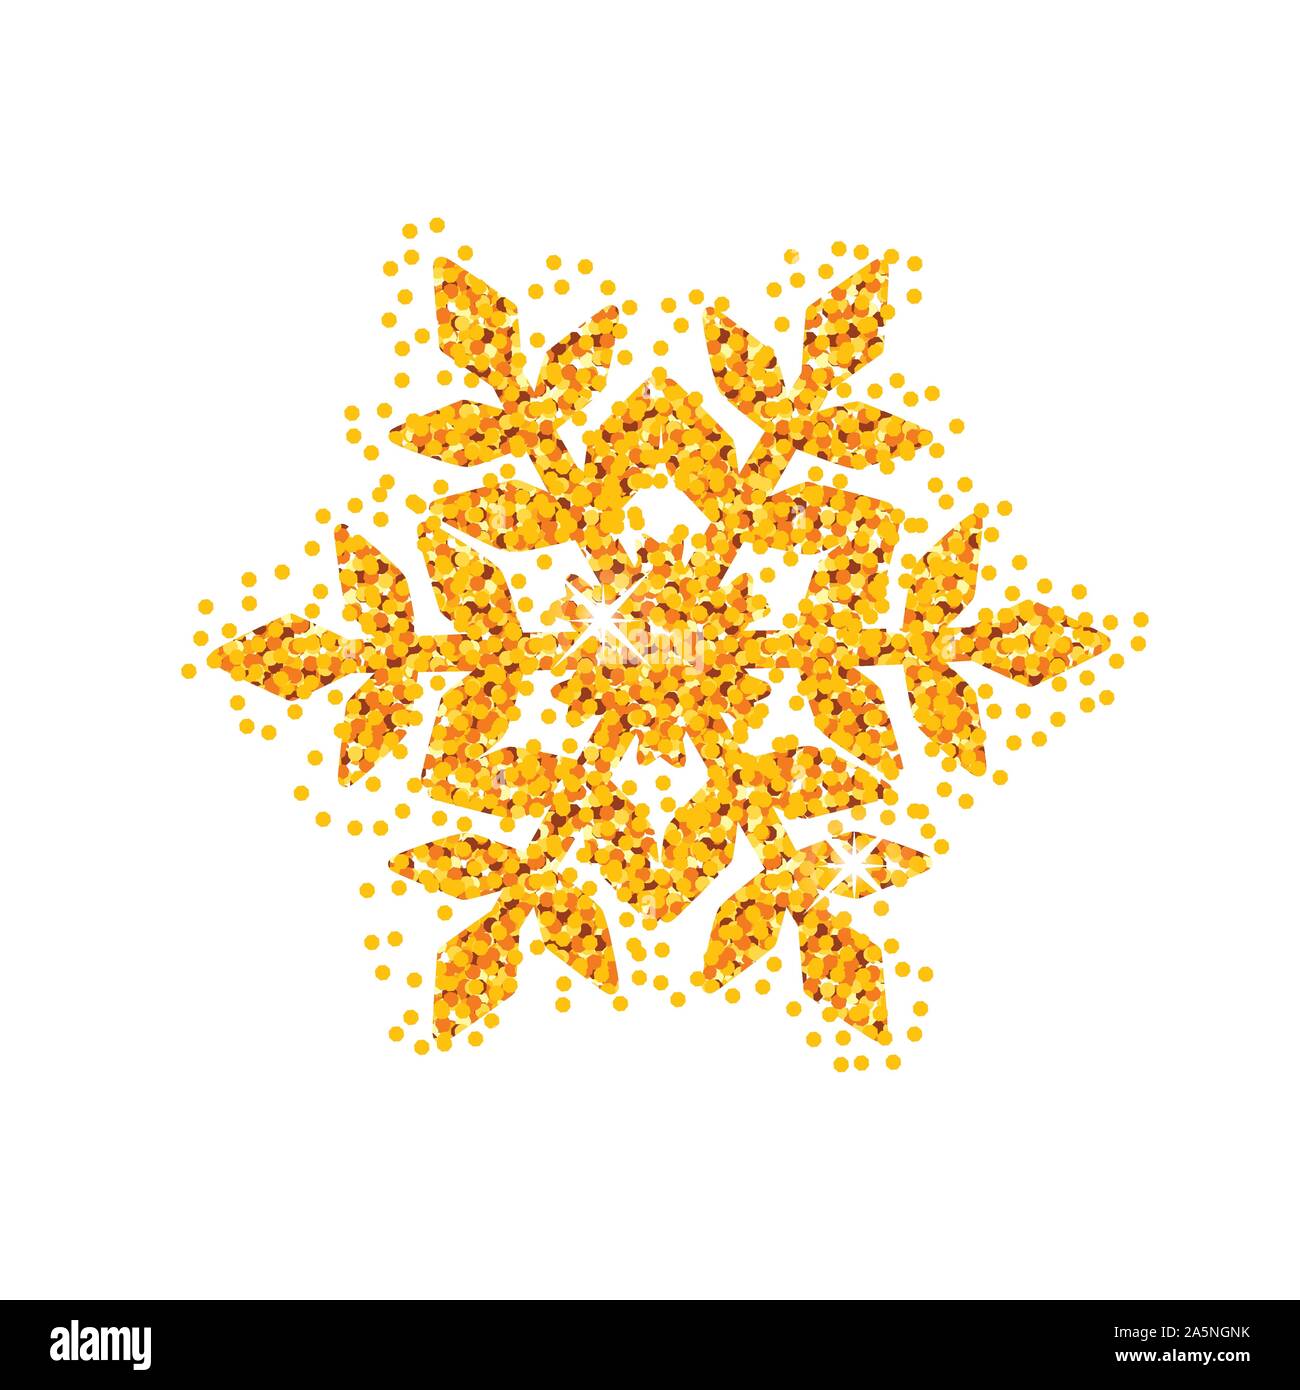 Christmas golden snowflake glitter pattern white background vector